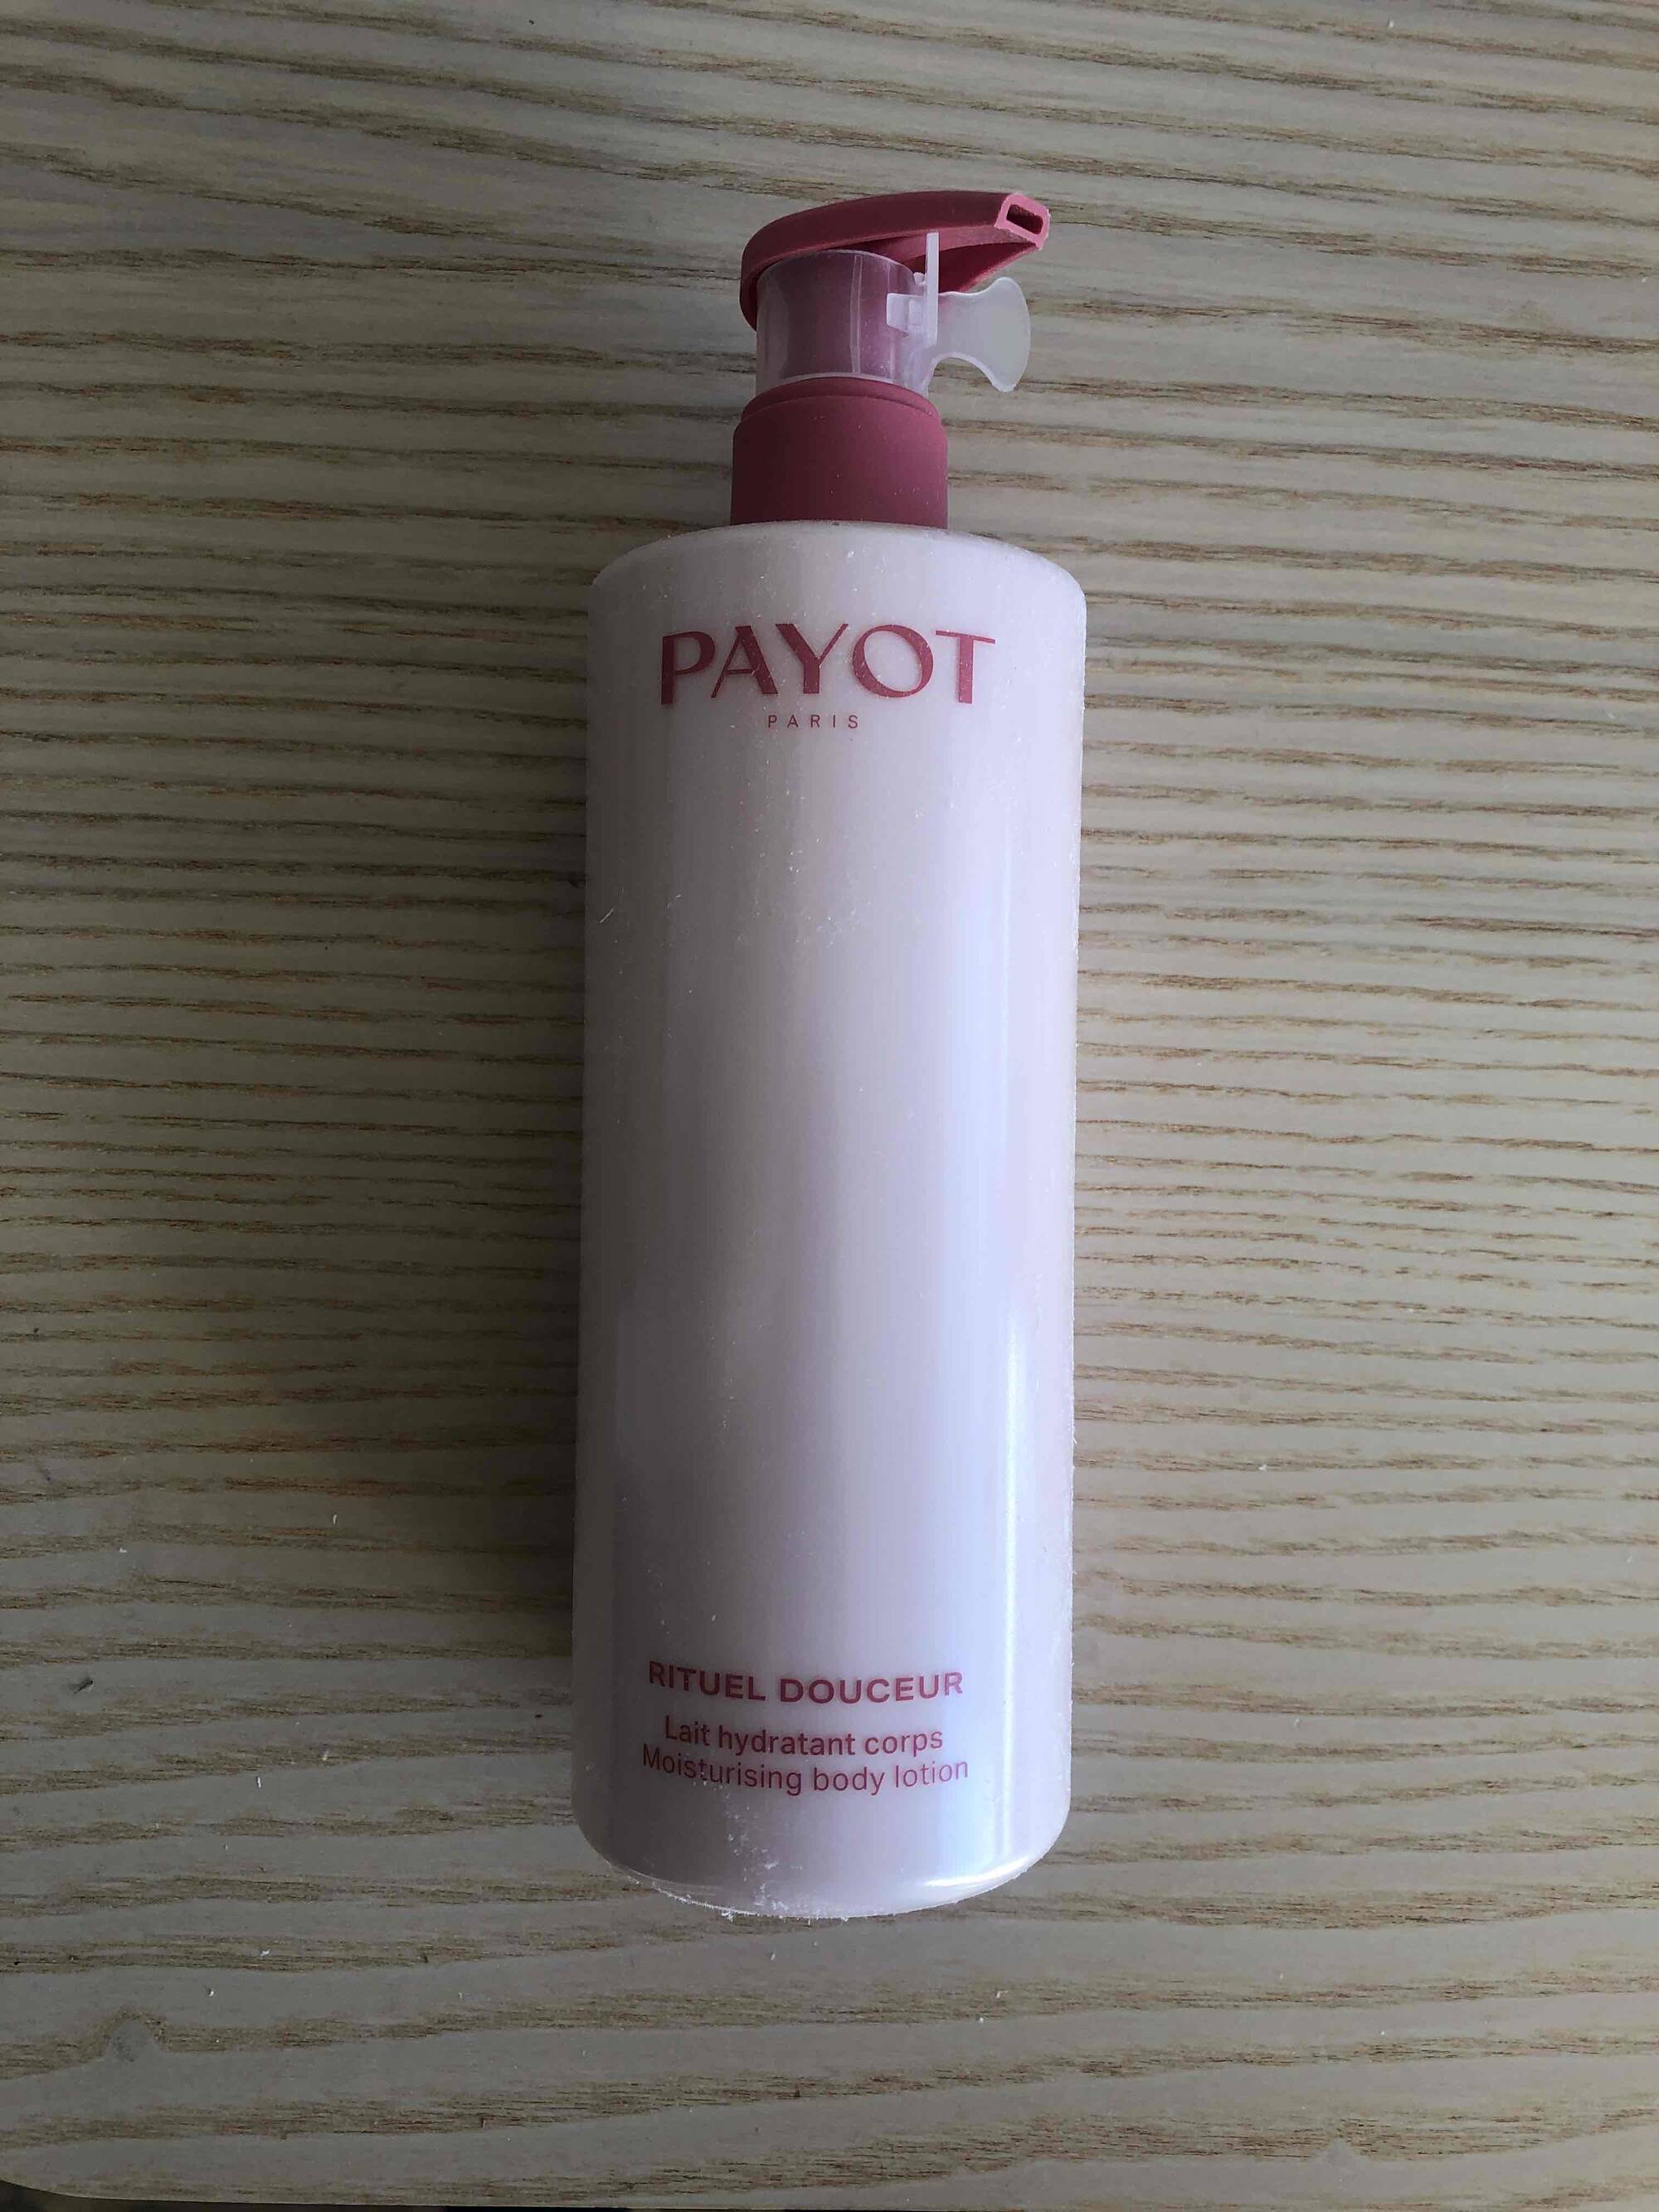 PAYOT - Rituel douceur - Lait hydratant corps 